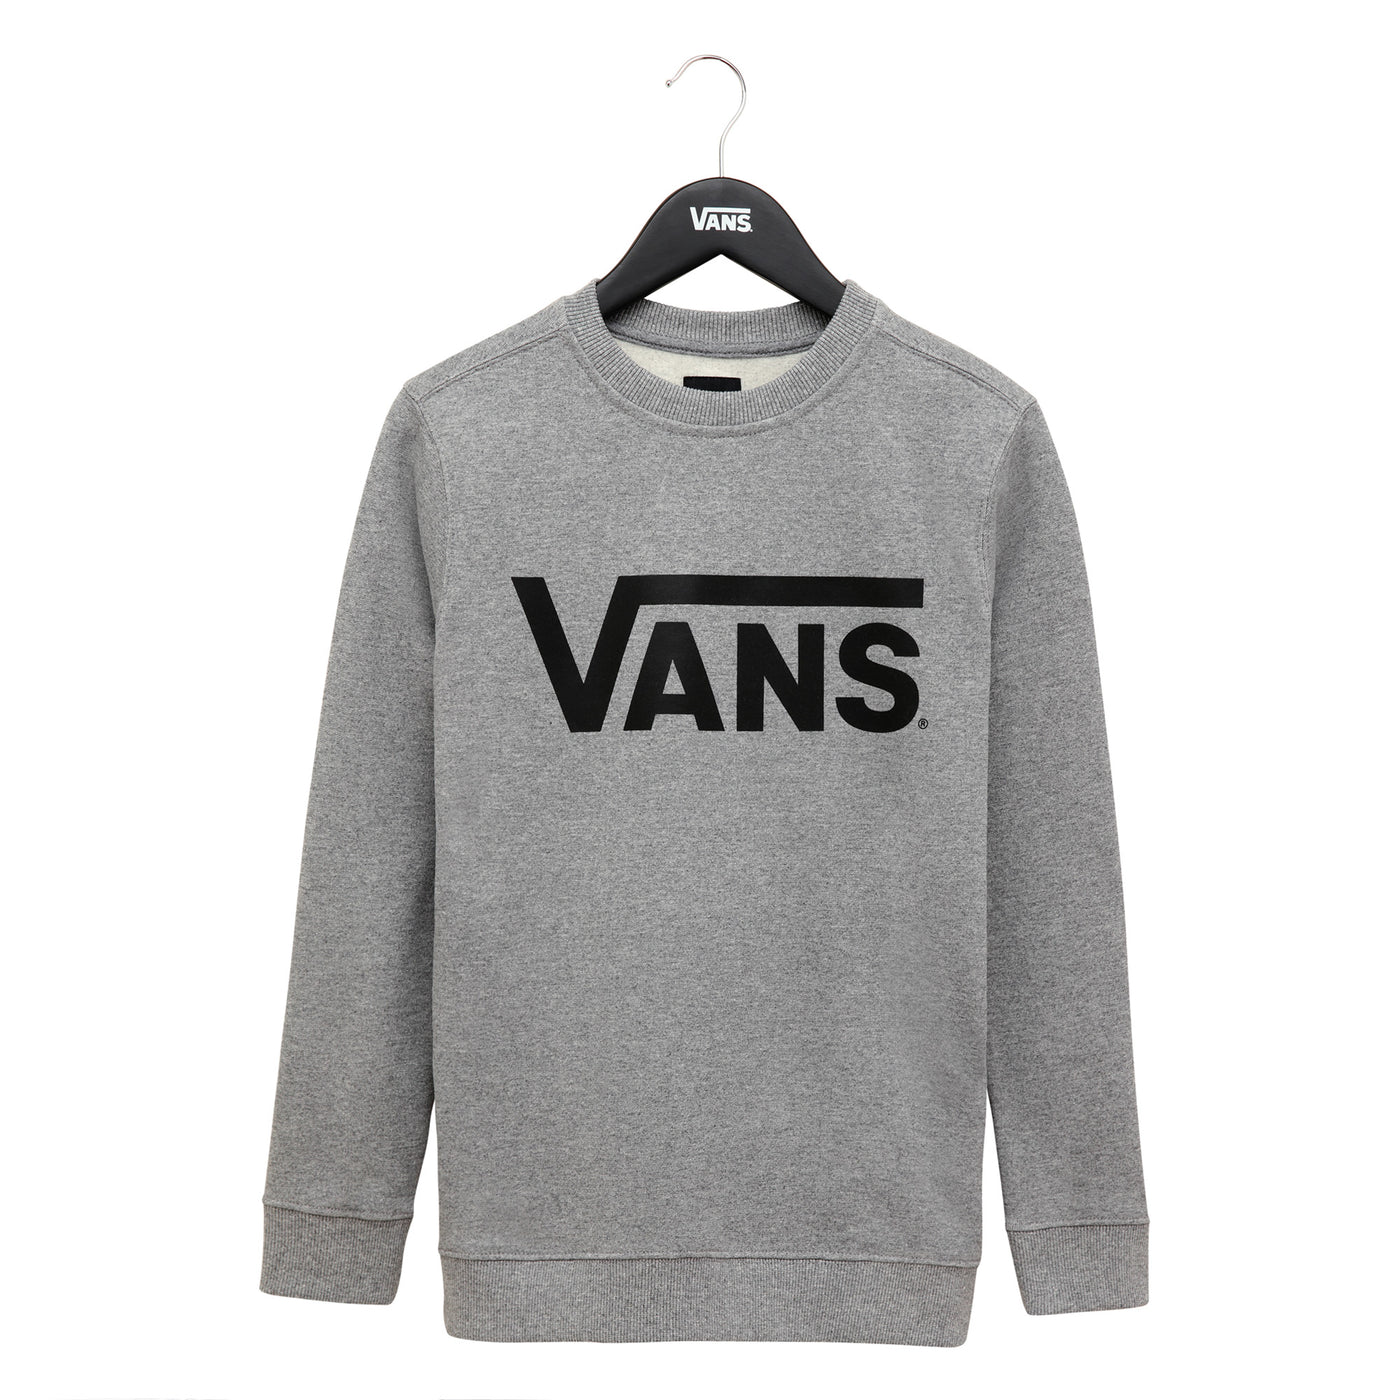 Vans classic crew - Sweatshirt - grey/black